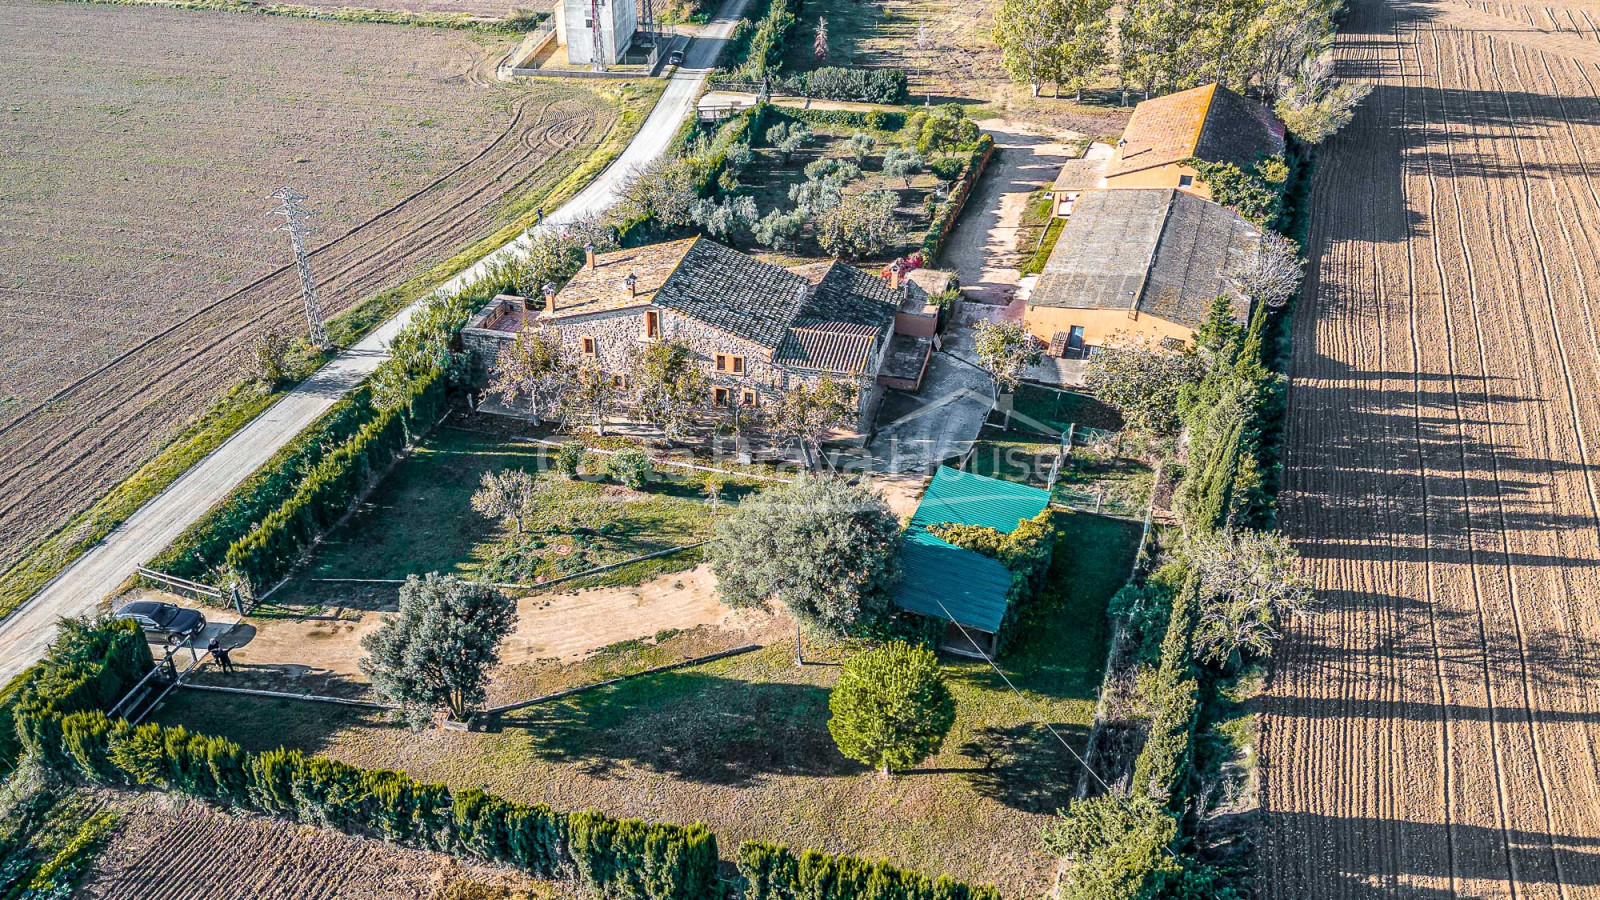 Masia señorial en Baix Empordà 5 ha de terrenos y caballerizas